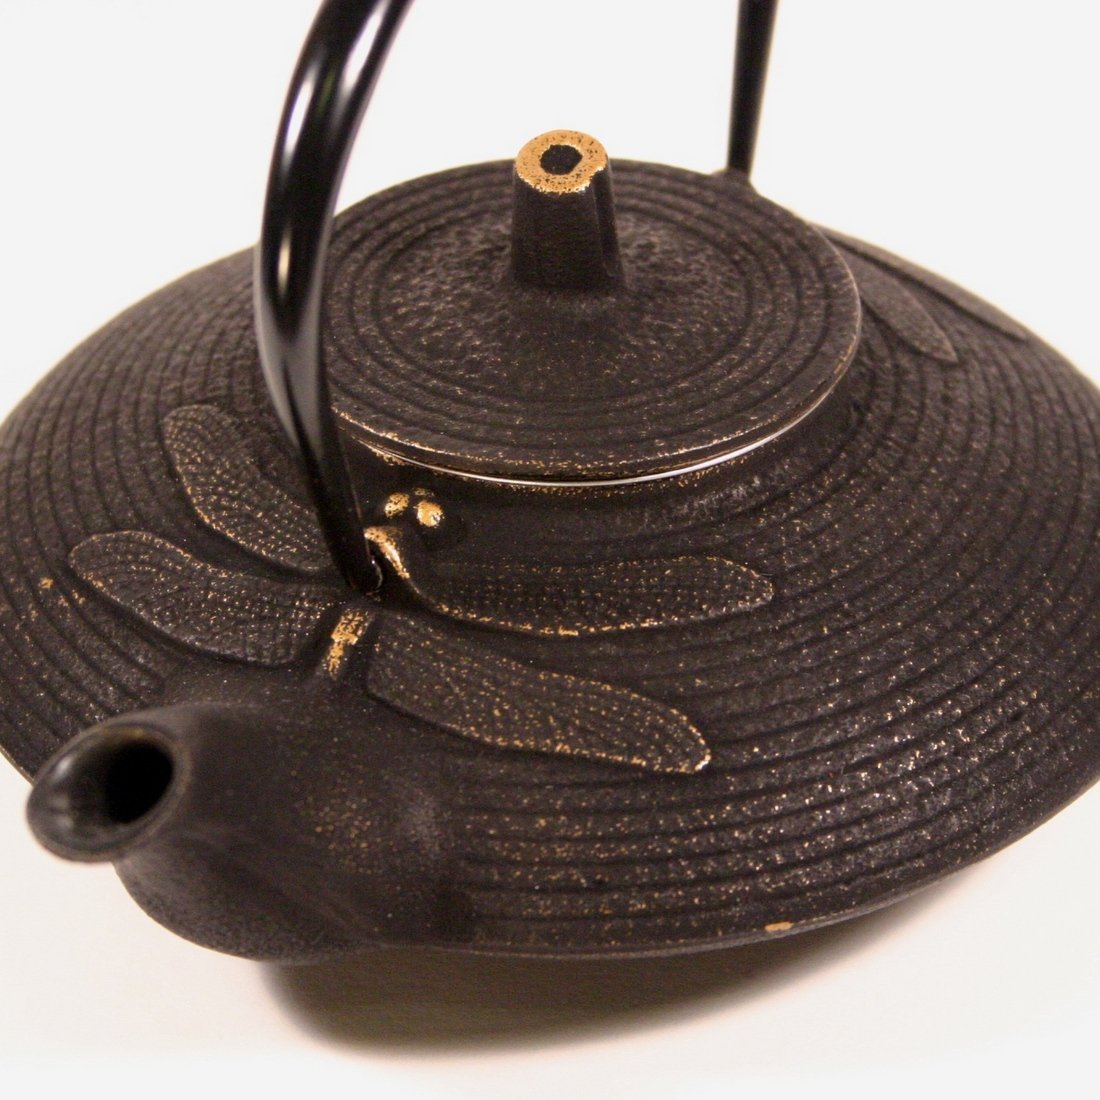 https://www.zentealife.com/cdn/shop/products/cast-iron-teapot-dragonfly-gold-3.jpg?v=1511595684